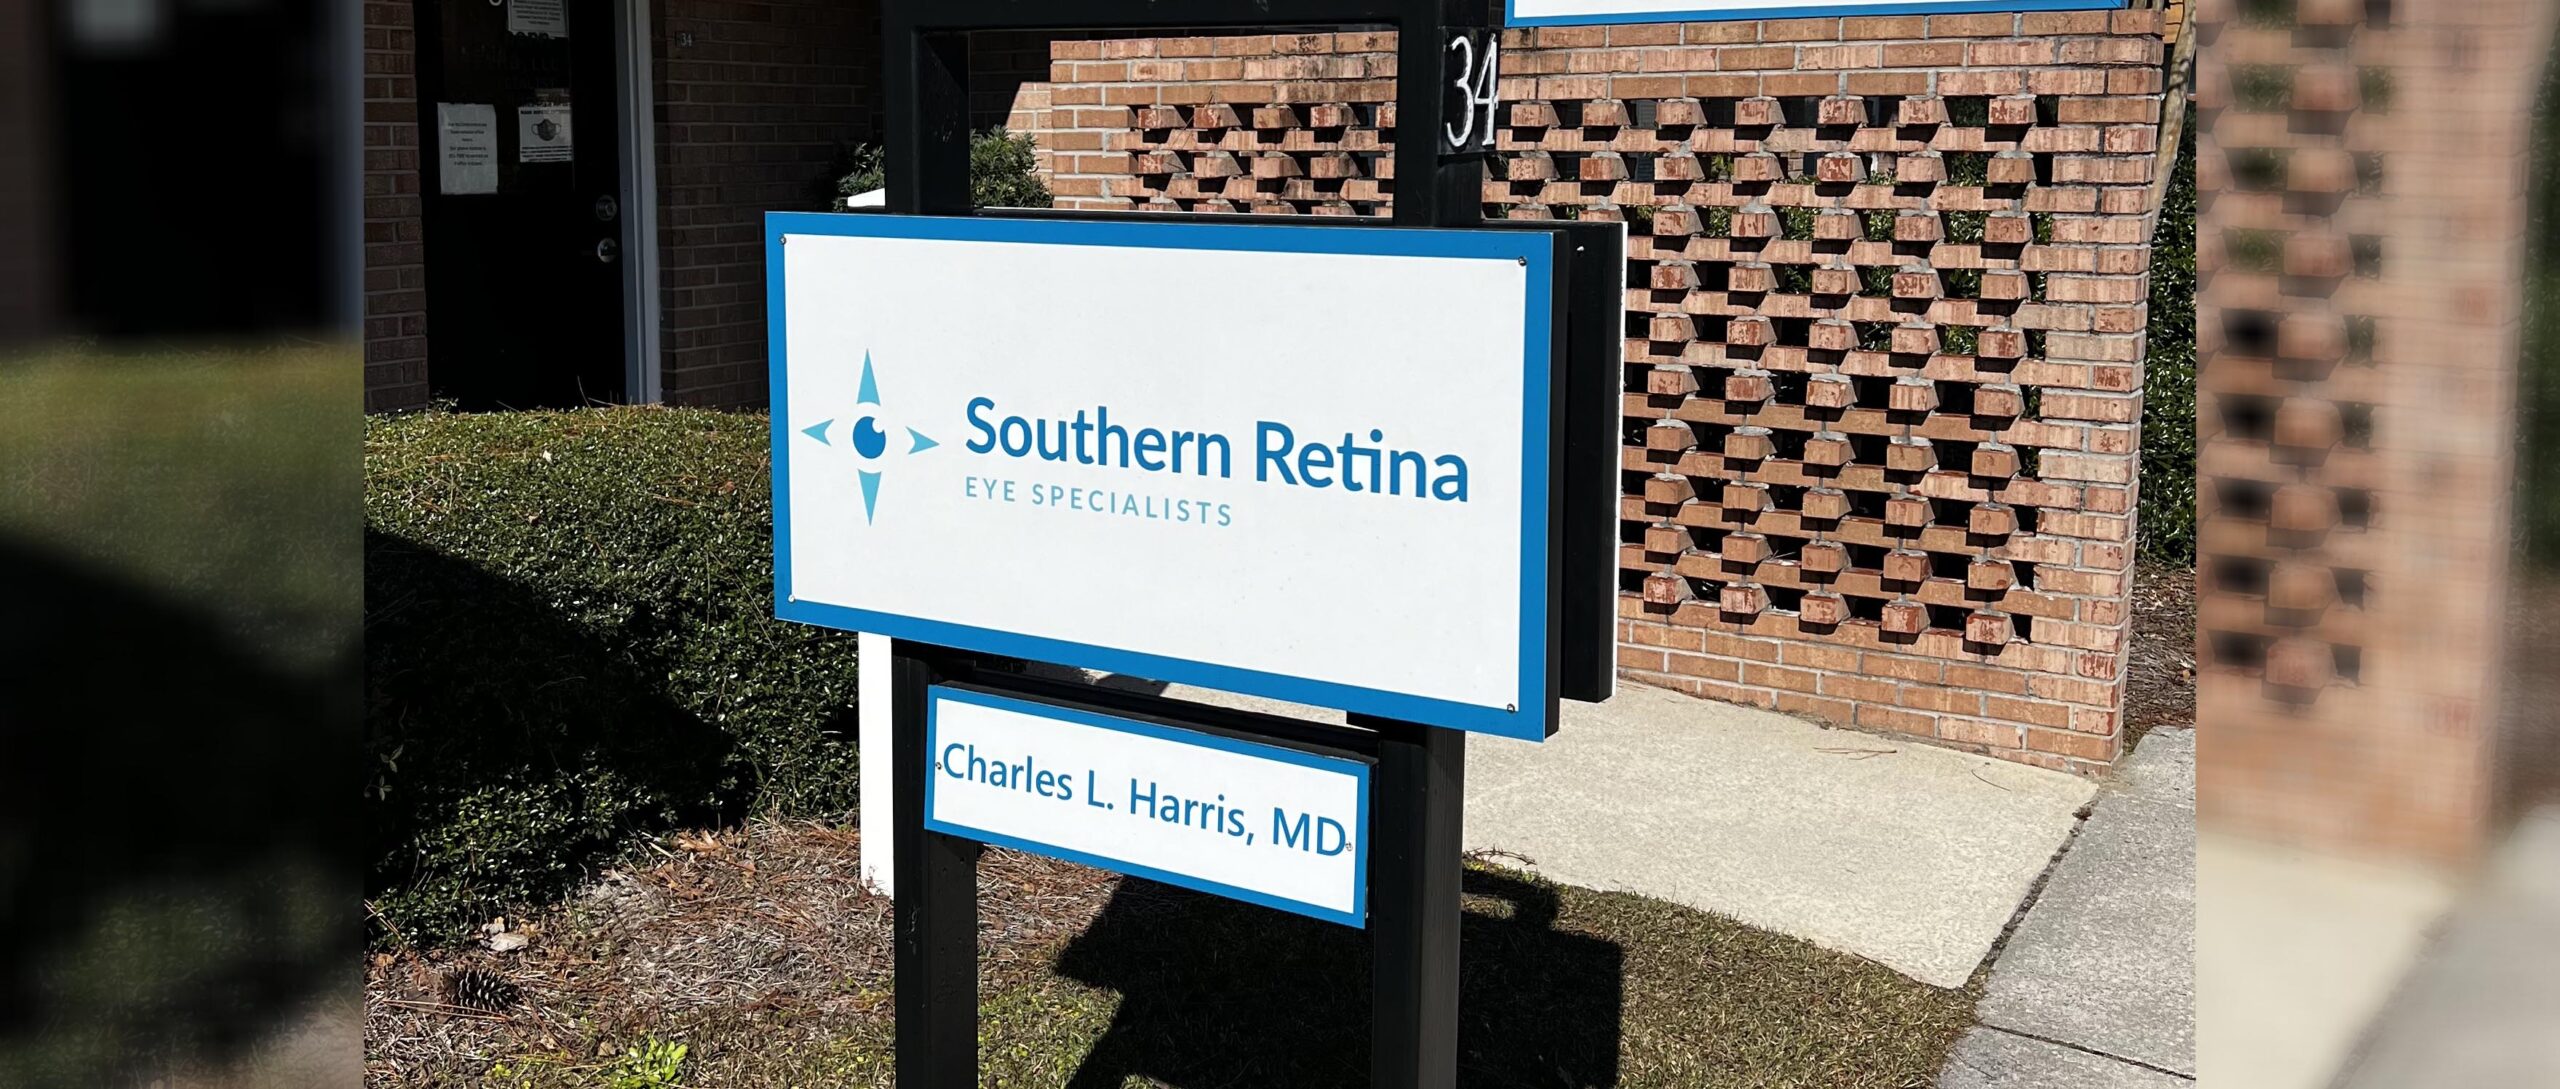 Southern Retina eye specialist